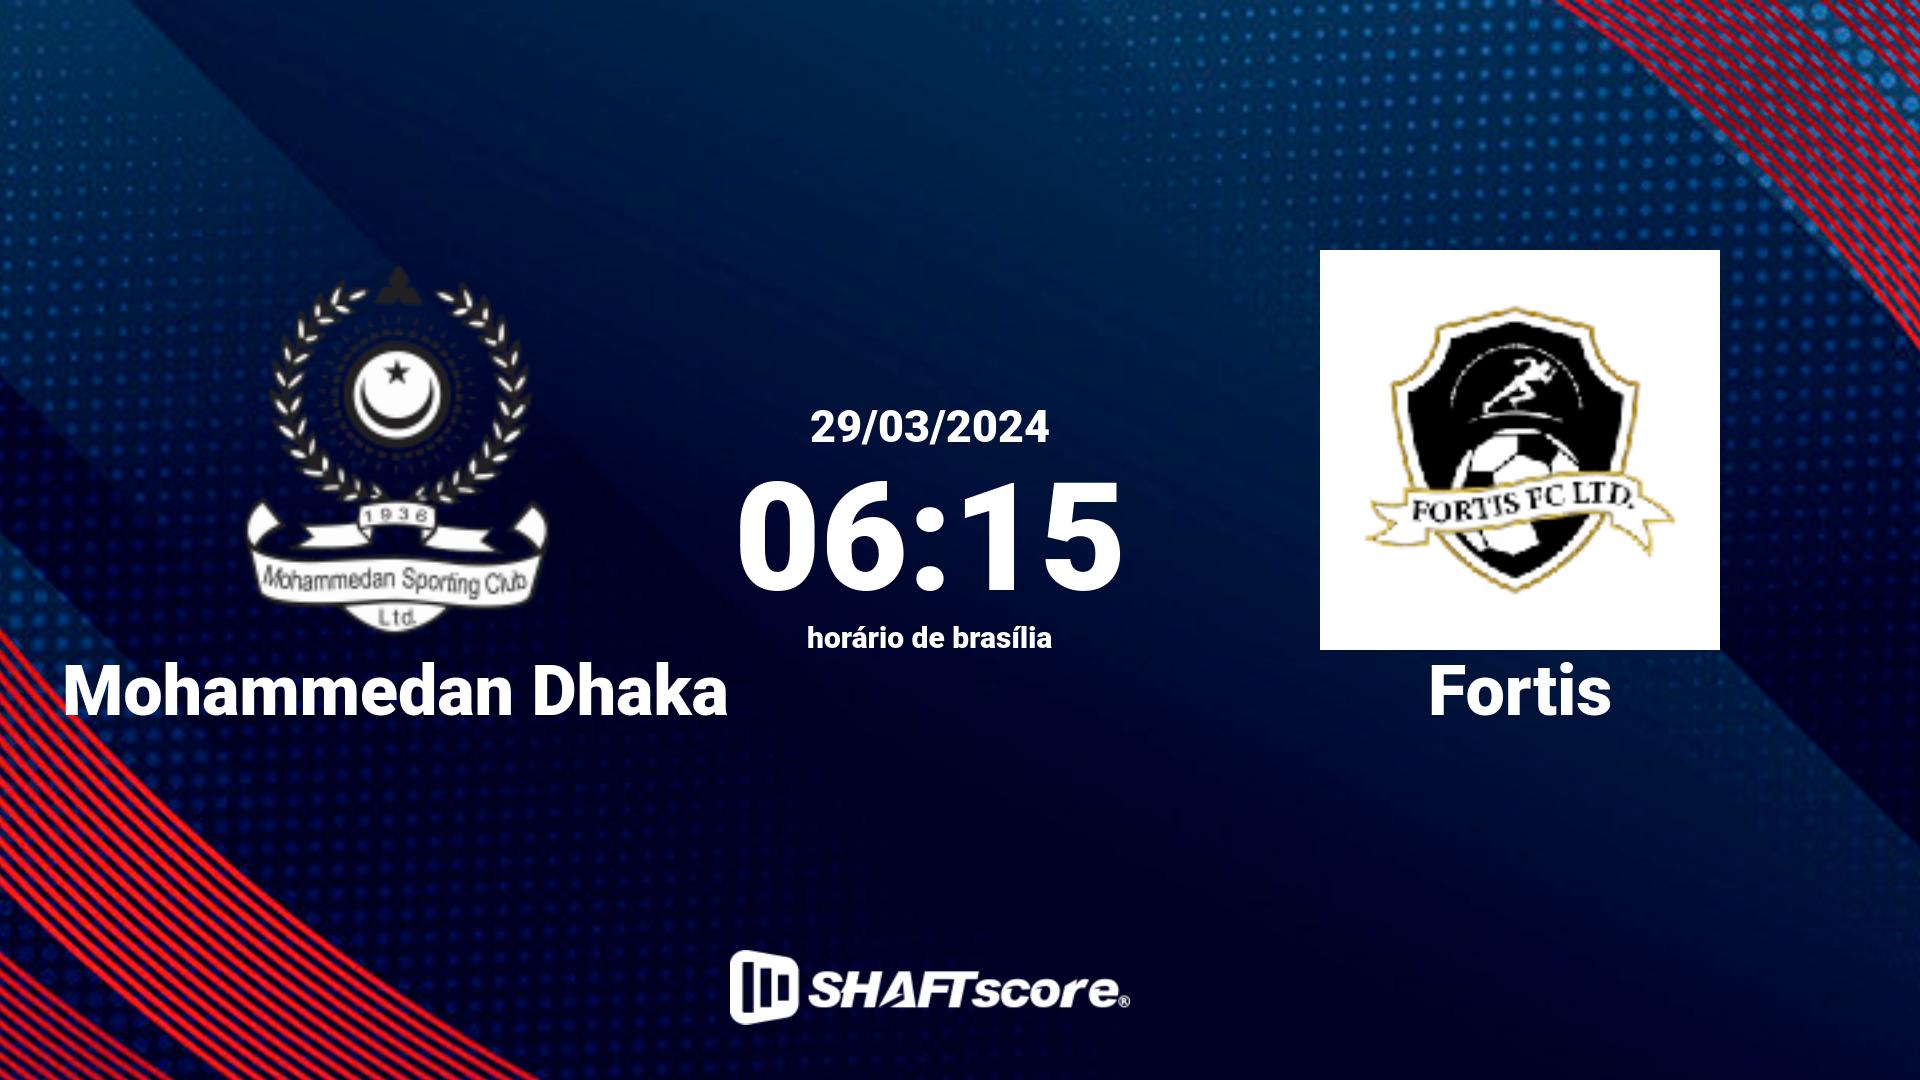 Estatísticas do jogo Mohammedan Dhaka vs Fortis 29.03 06:15